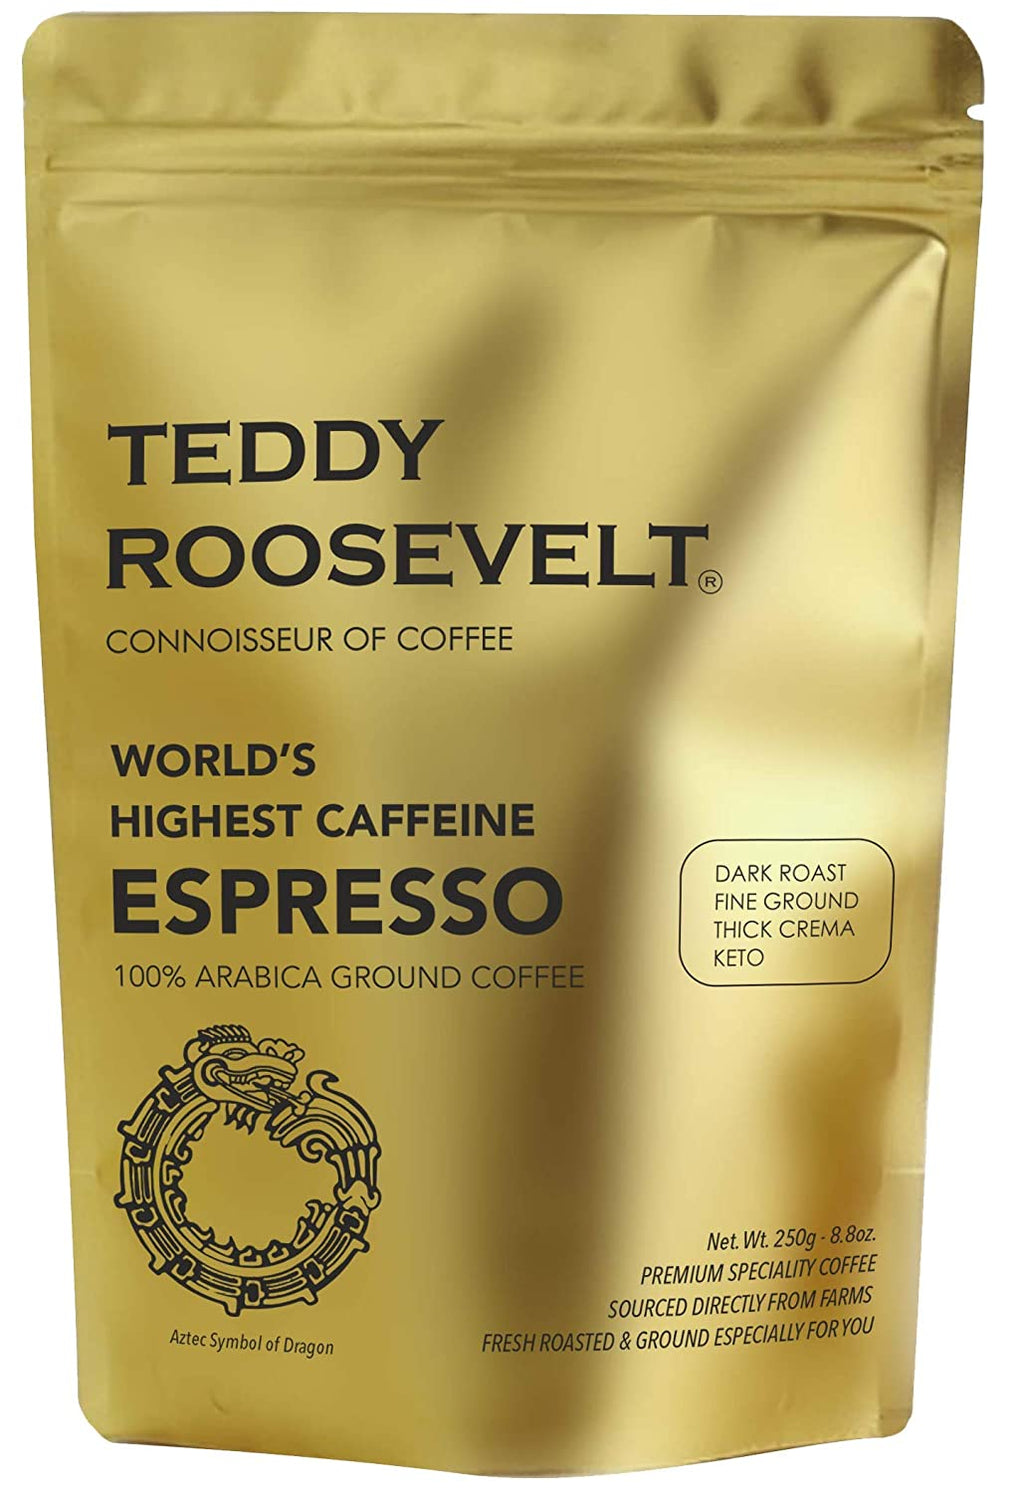 Teddy Roosevelt High Caffeine Espresso, Arabica Dark Roast Fine Ground, 250g